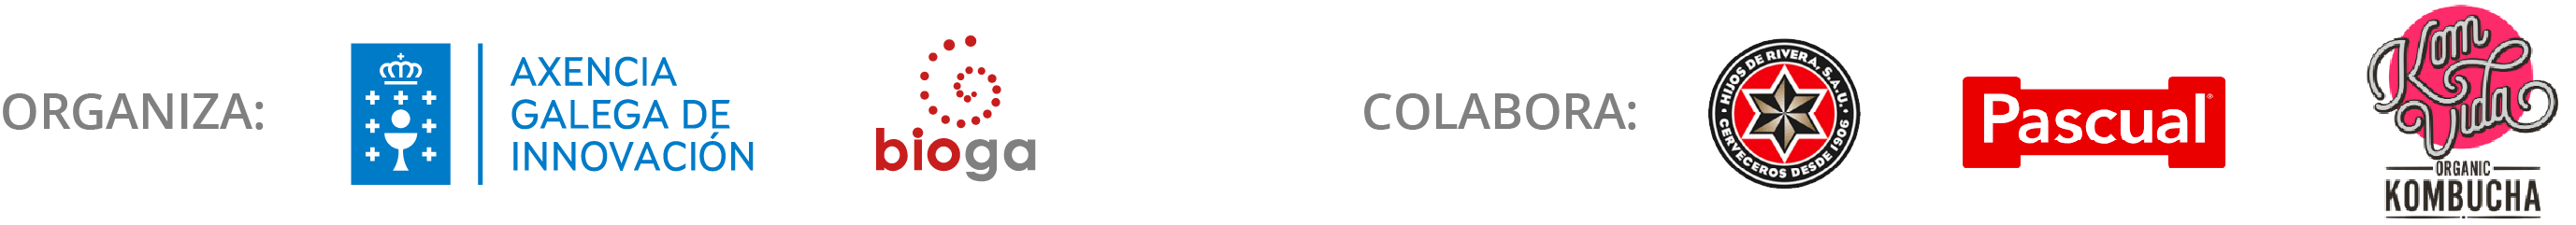 Logotipos de organización y colaboración